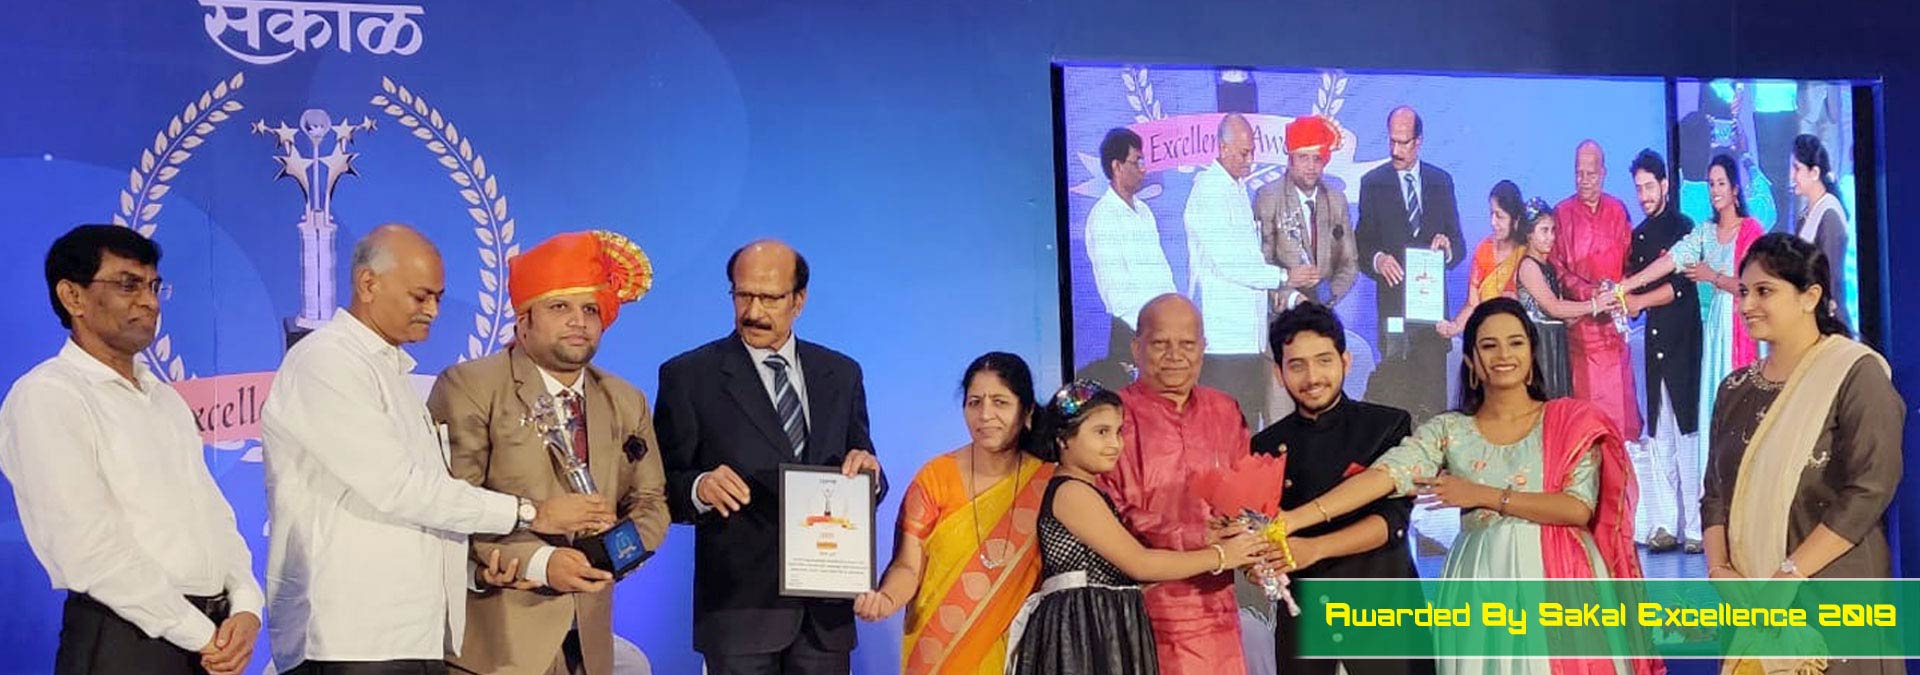 Cafe Durga, sakal excellance award 2019, Shashank Mengade